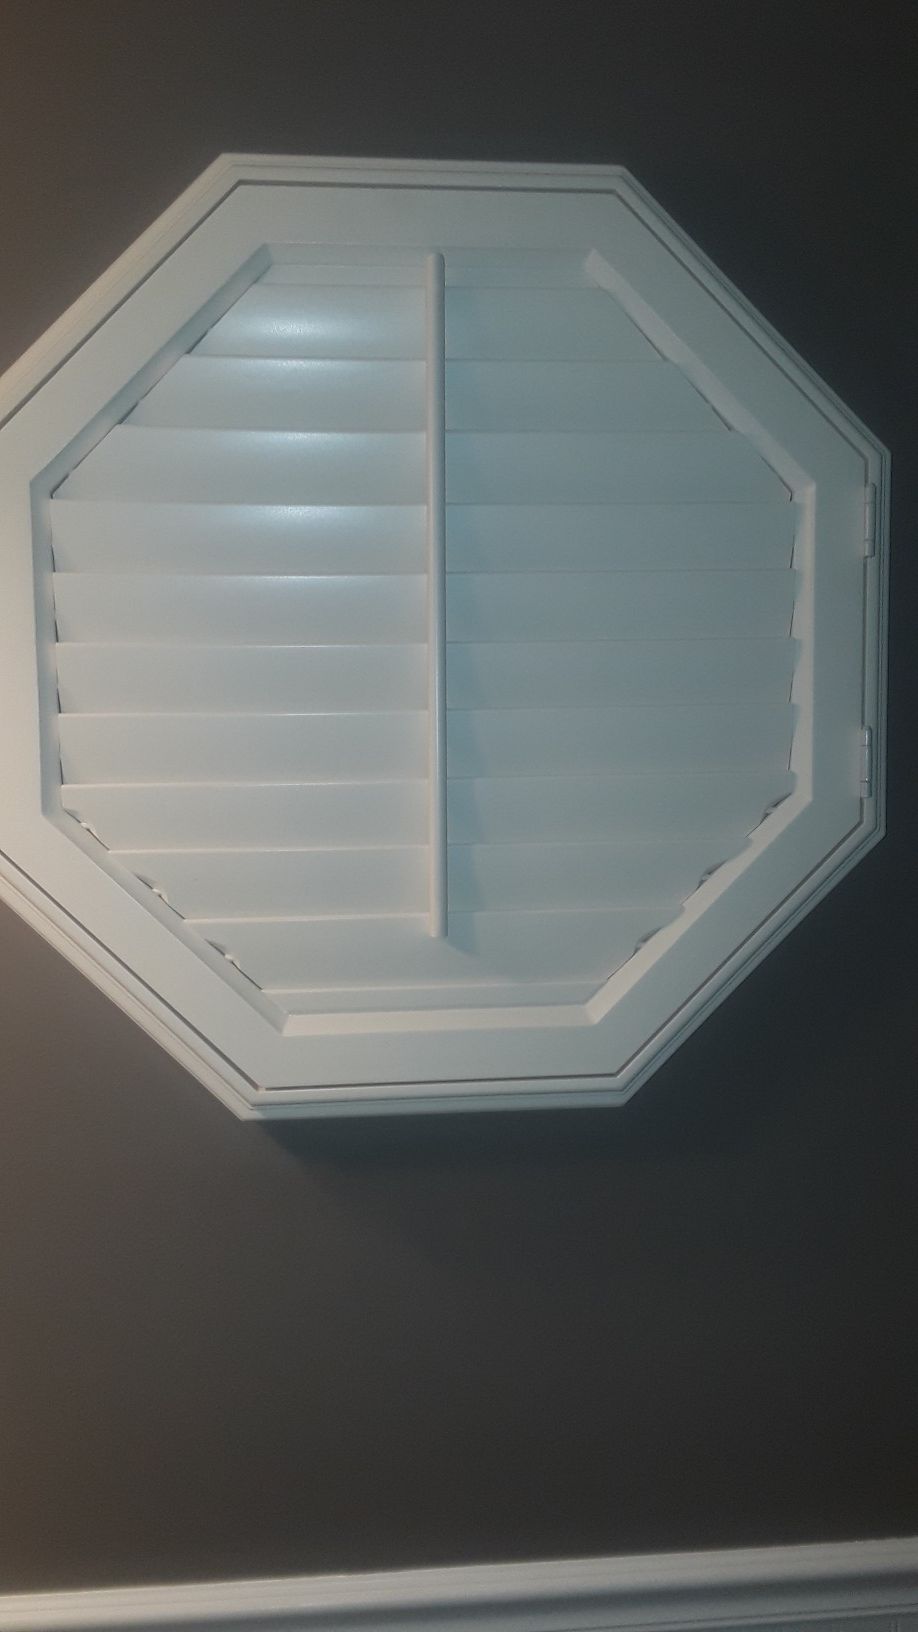 Octagon window shutter